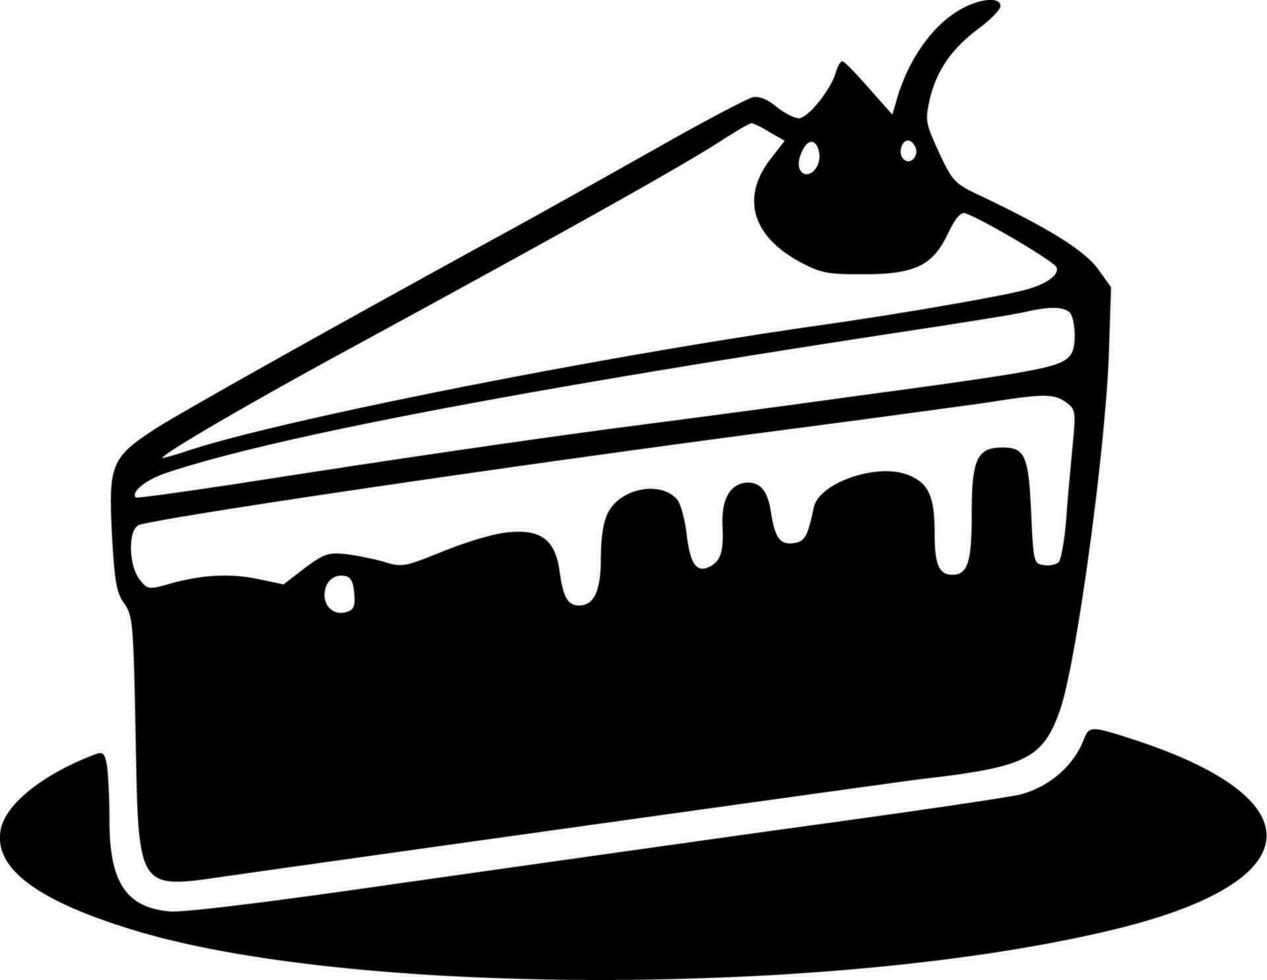 kaka - svart och vit isolerat ikon - vektor illustration